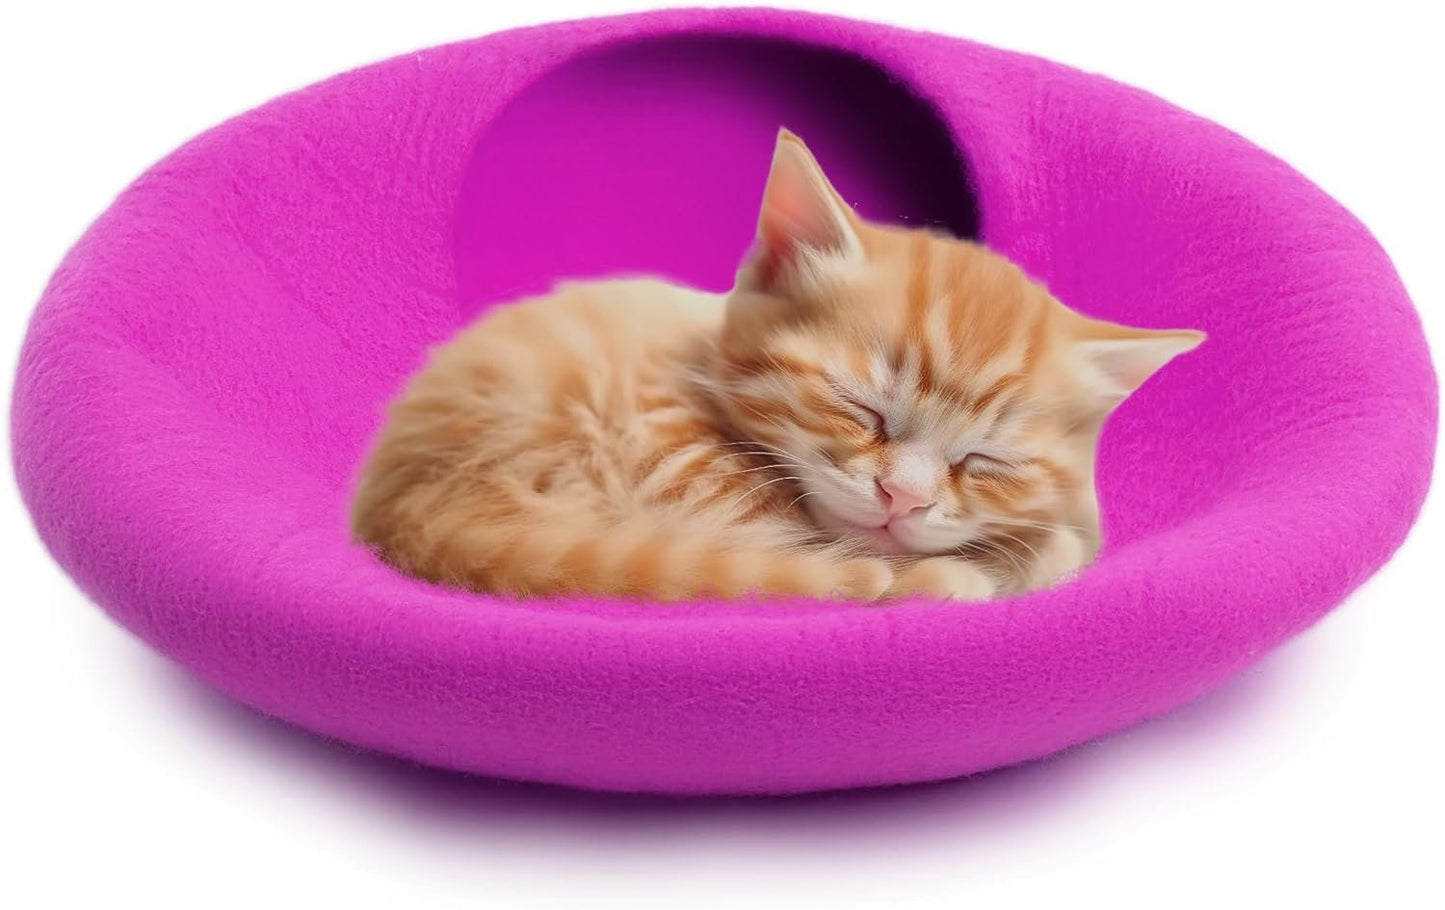 Cozy felt cat bed for kittens